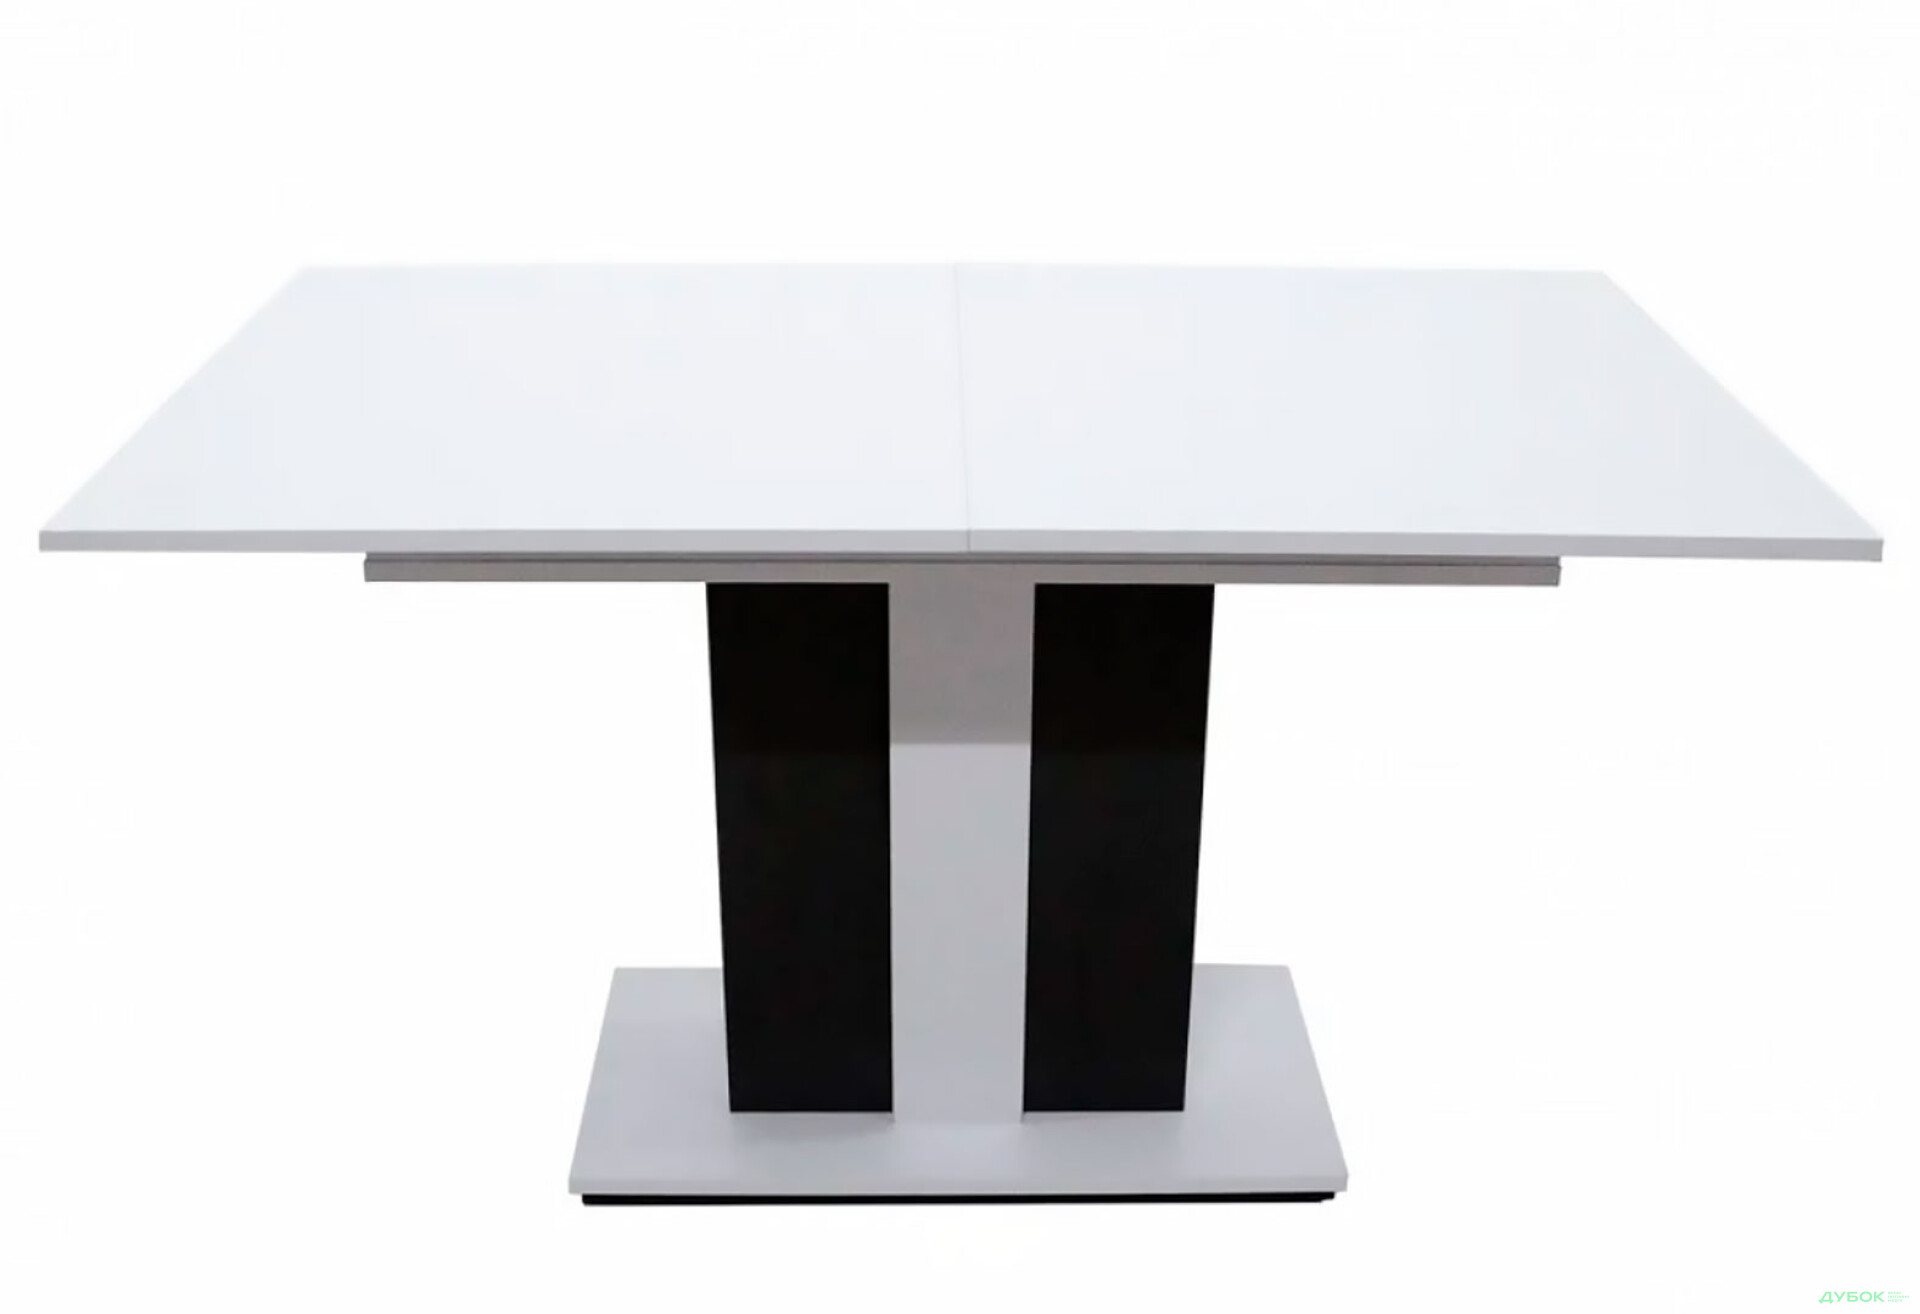 Фото 3 - Стол обеденный Intarsio Clasic 140x80 см раскладной, , аляска белая РЕ/антрацит